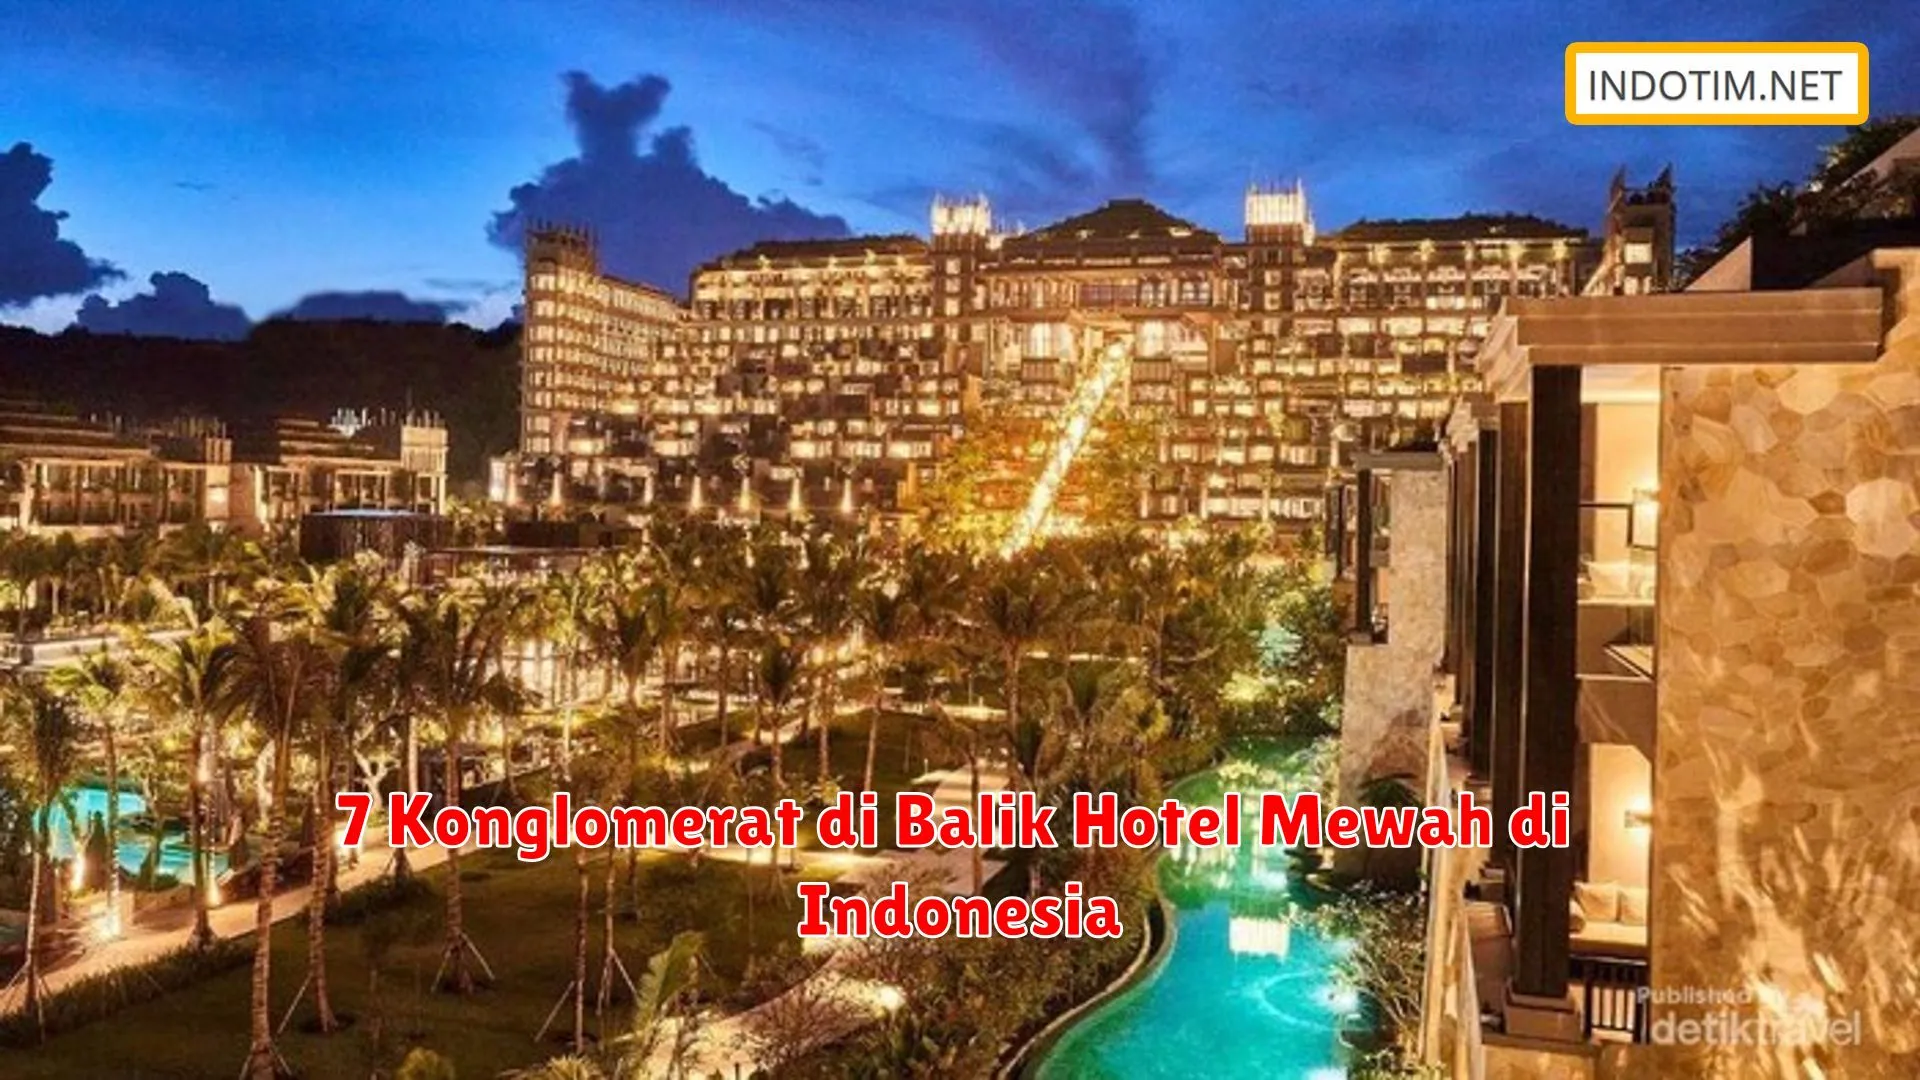 7 Konglomerat di Balik Hotel Mewah di Indonesia